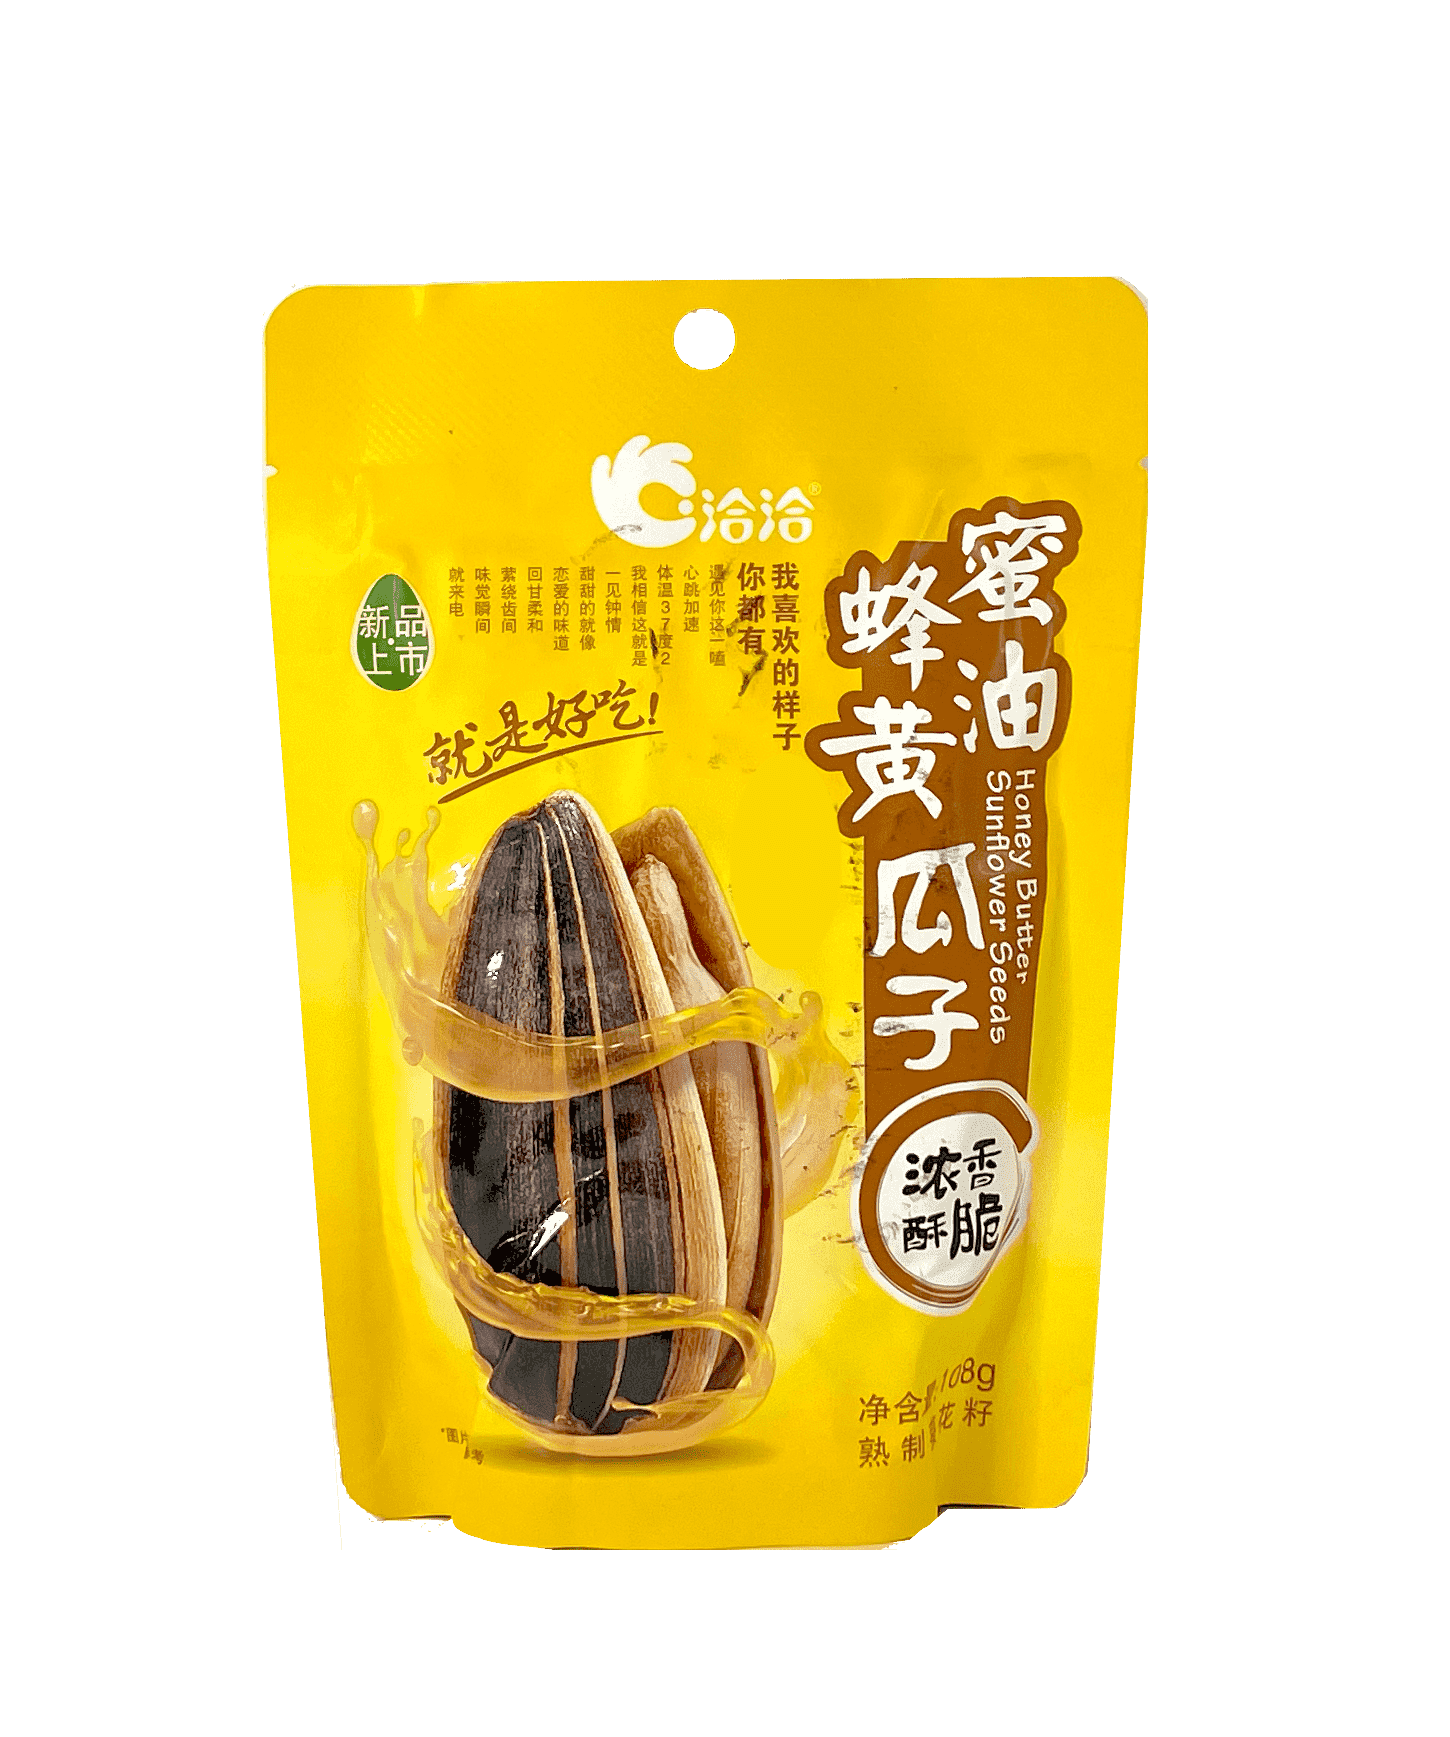 Solrosfrön Honung/Smör Smak 108g Cha Cha Kina